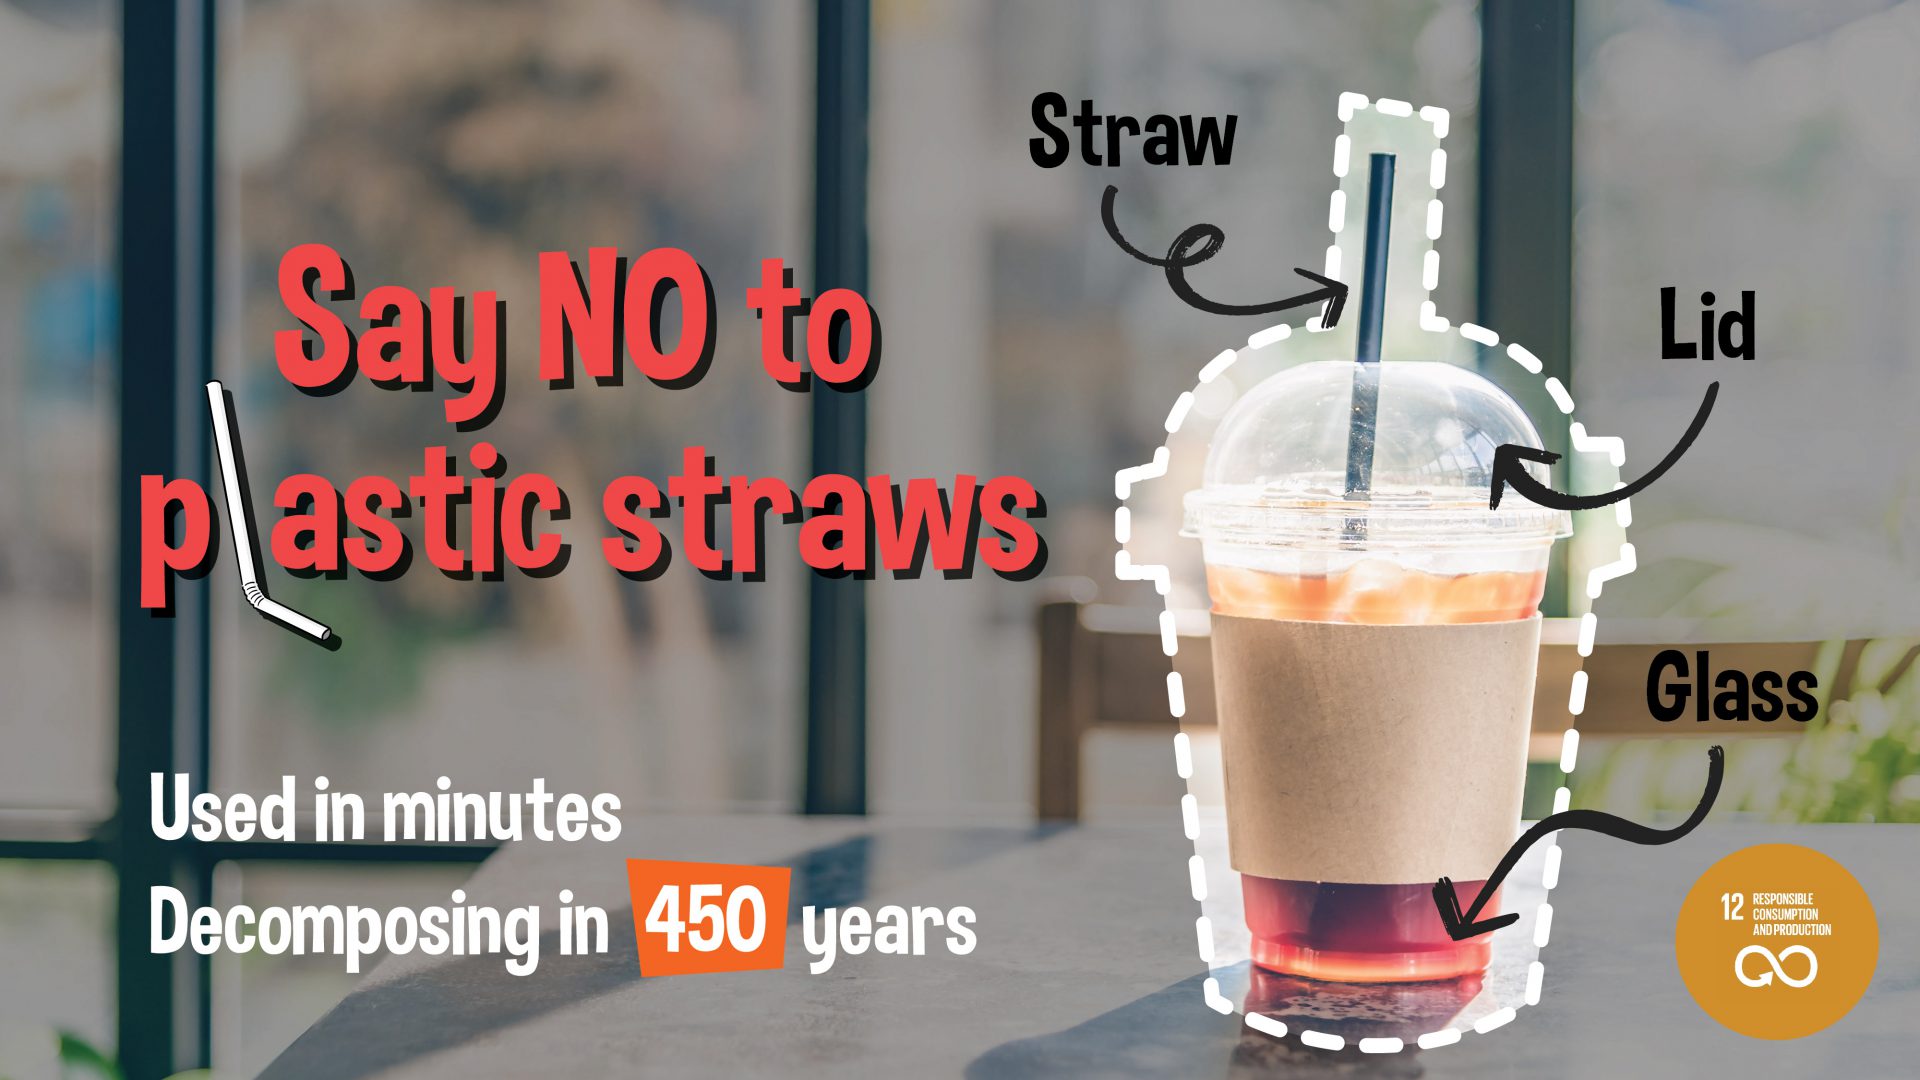 Siriraj Launched “Anti-Plastic Straws” Campaign